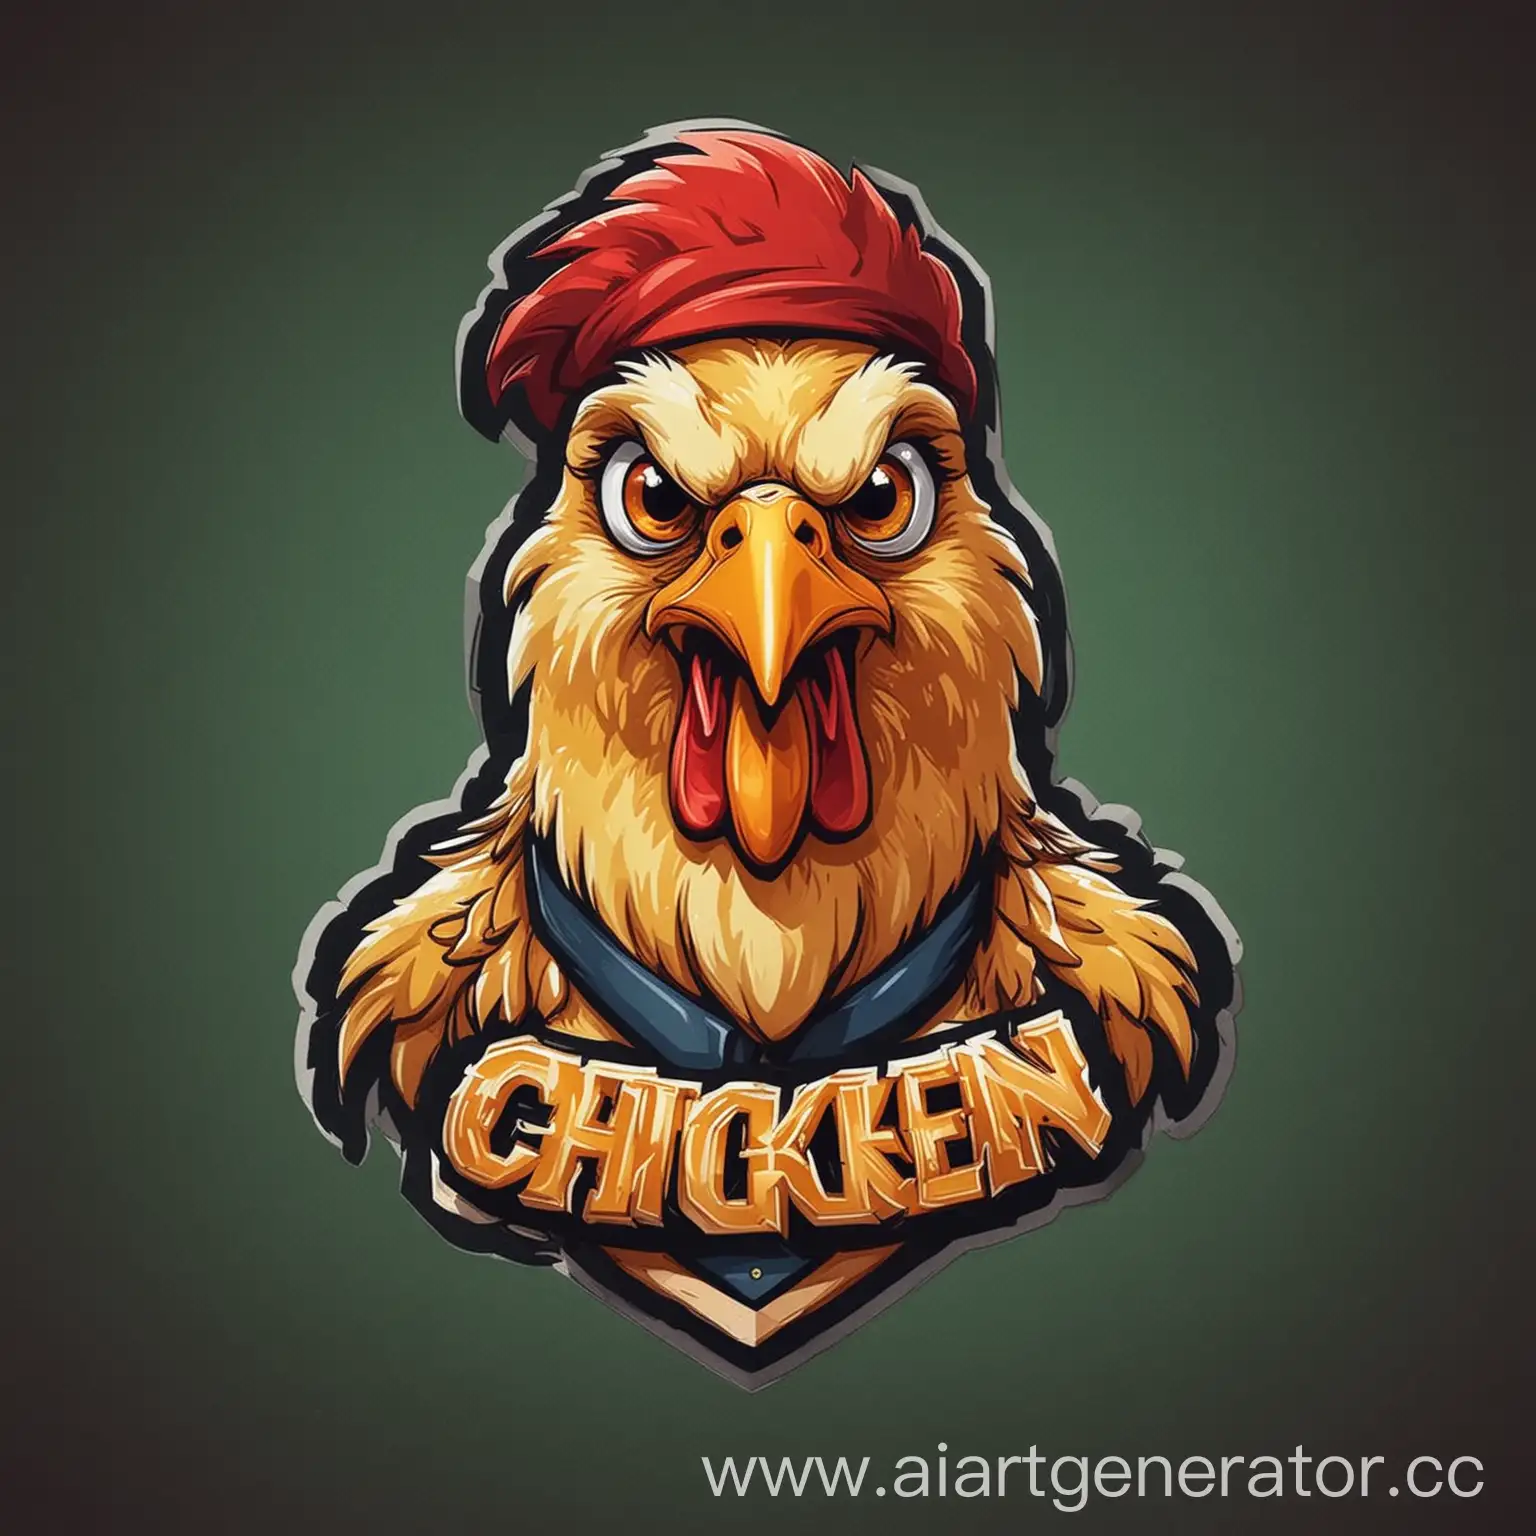 Colorful-Chicken-Logo-Design-for-School-Mascot